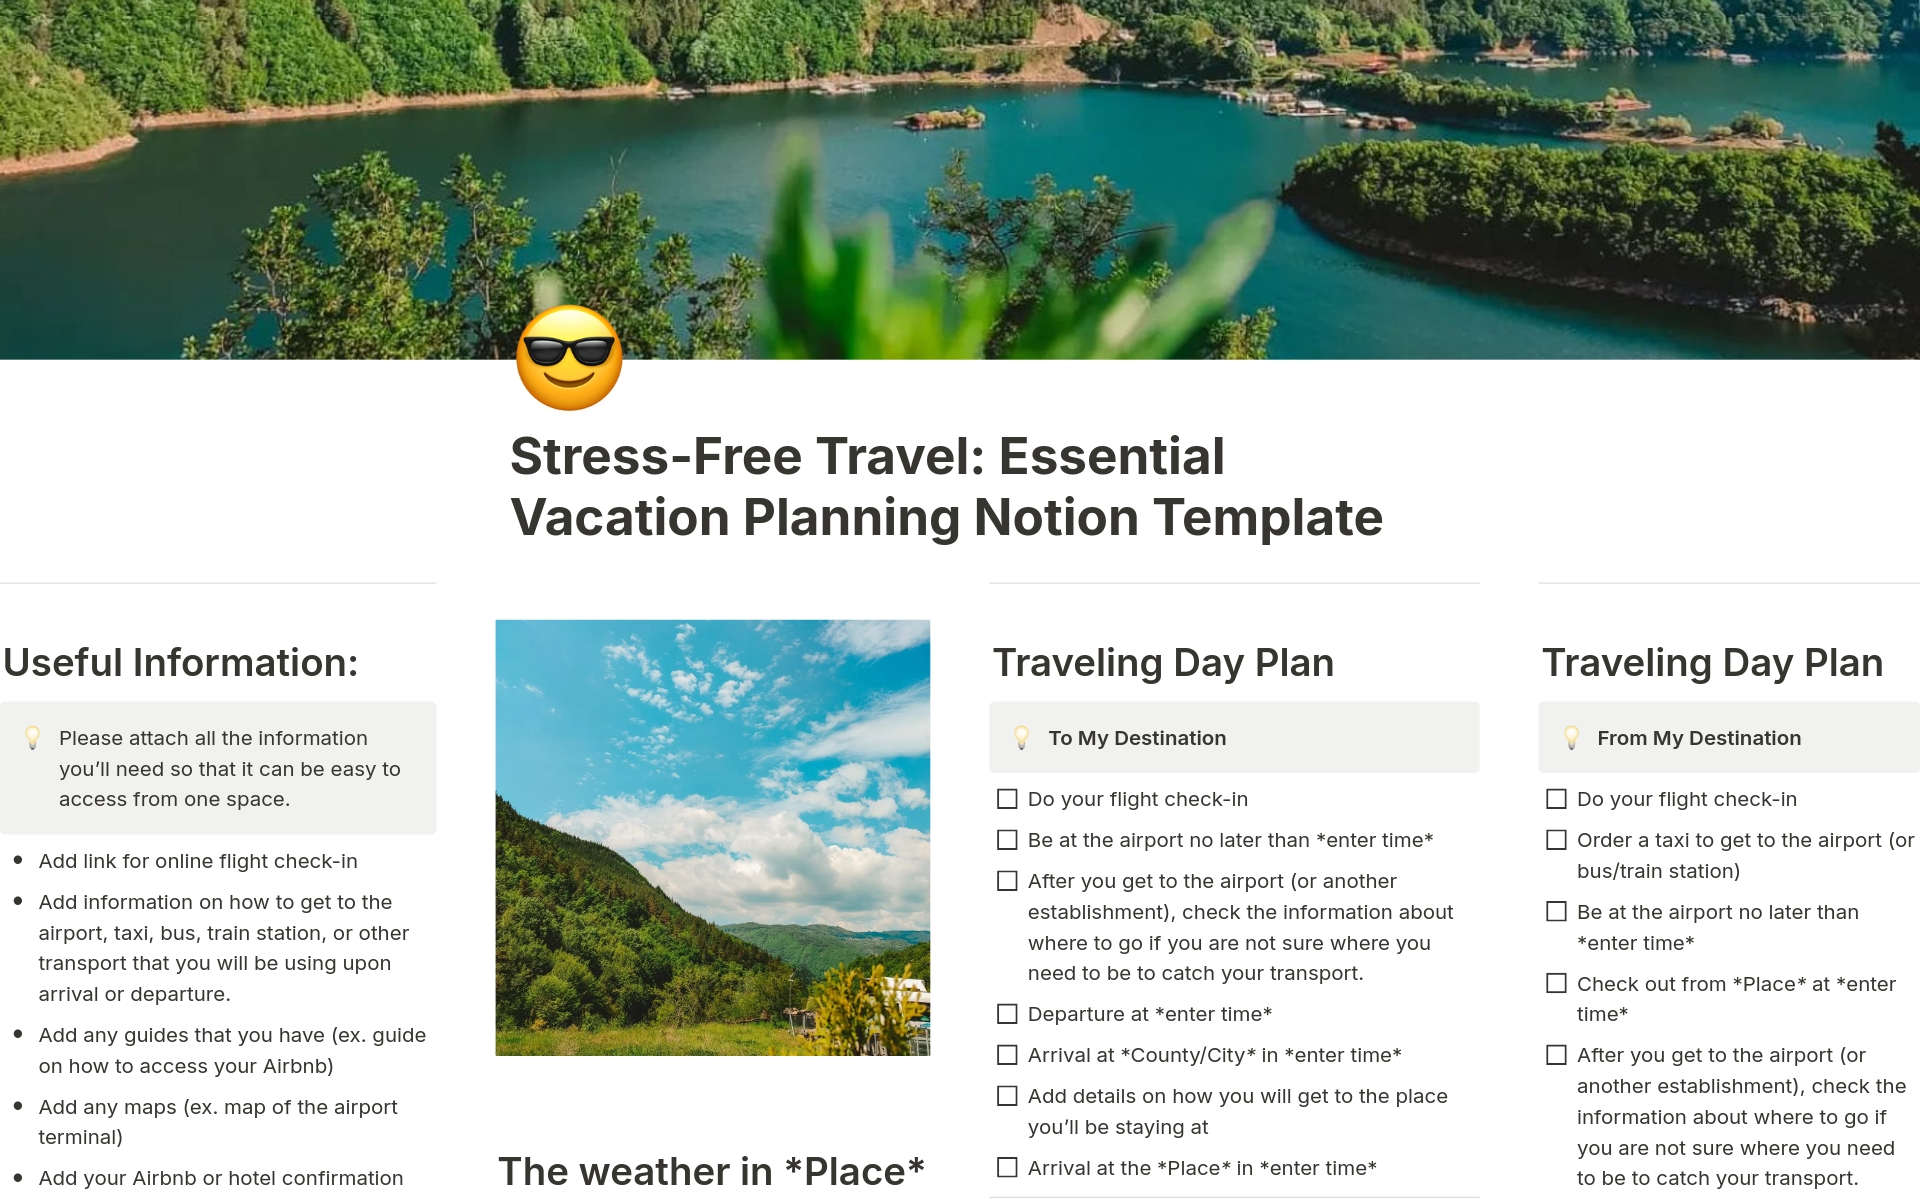 Uma prévia do modelo para Vacation Planning